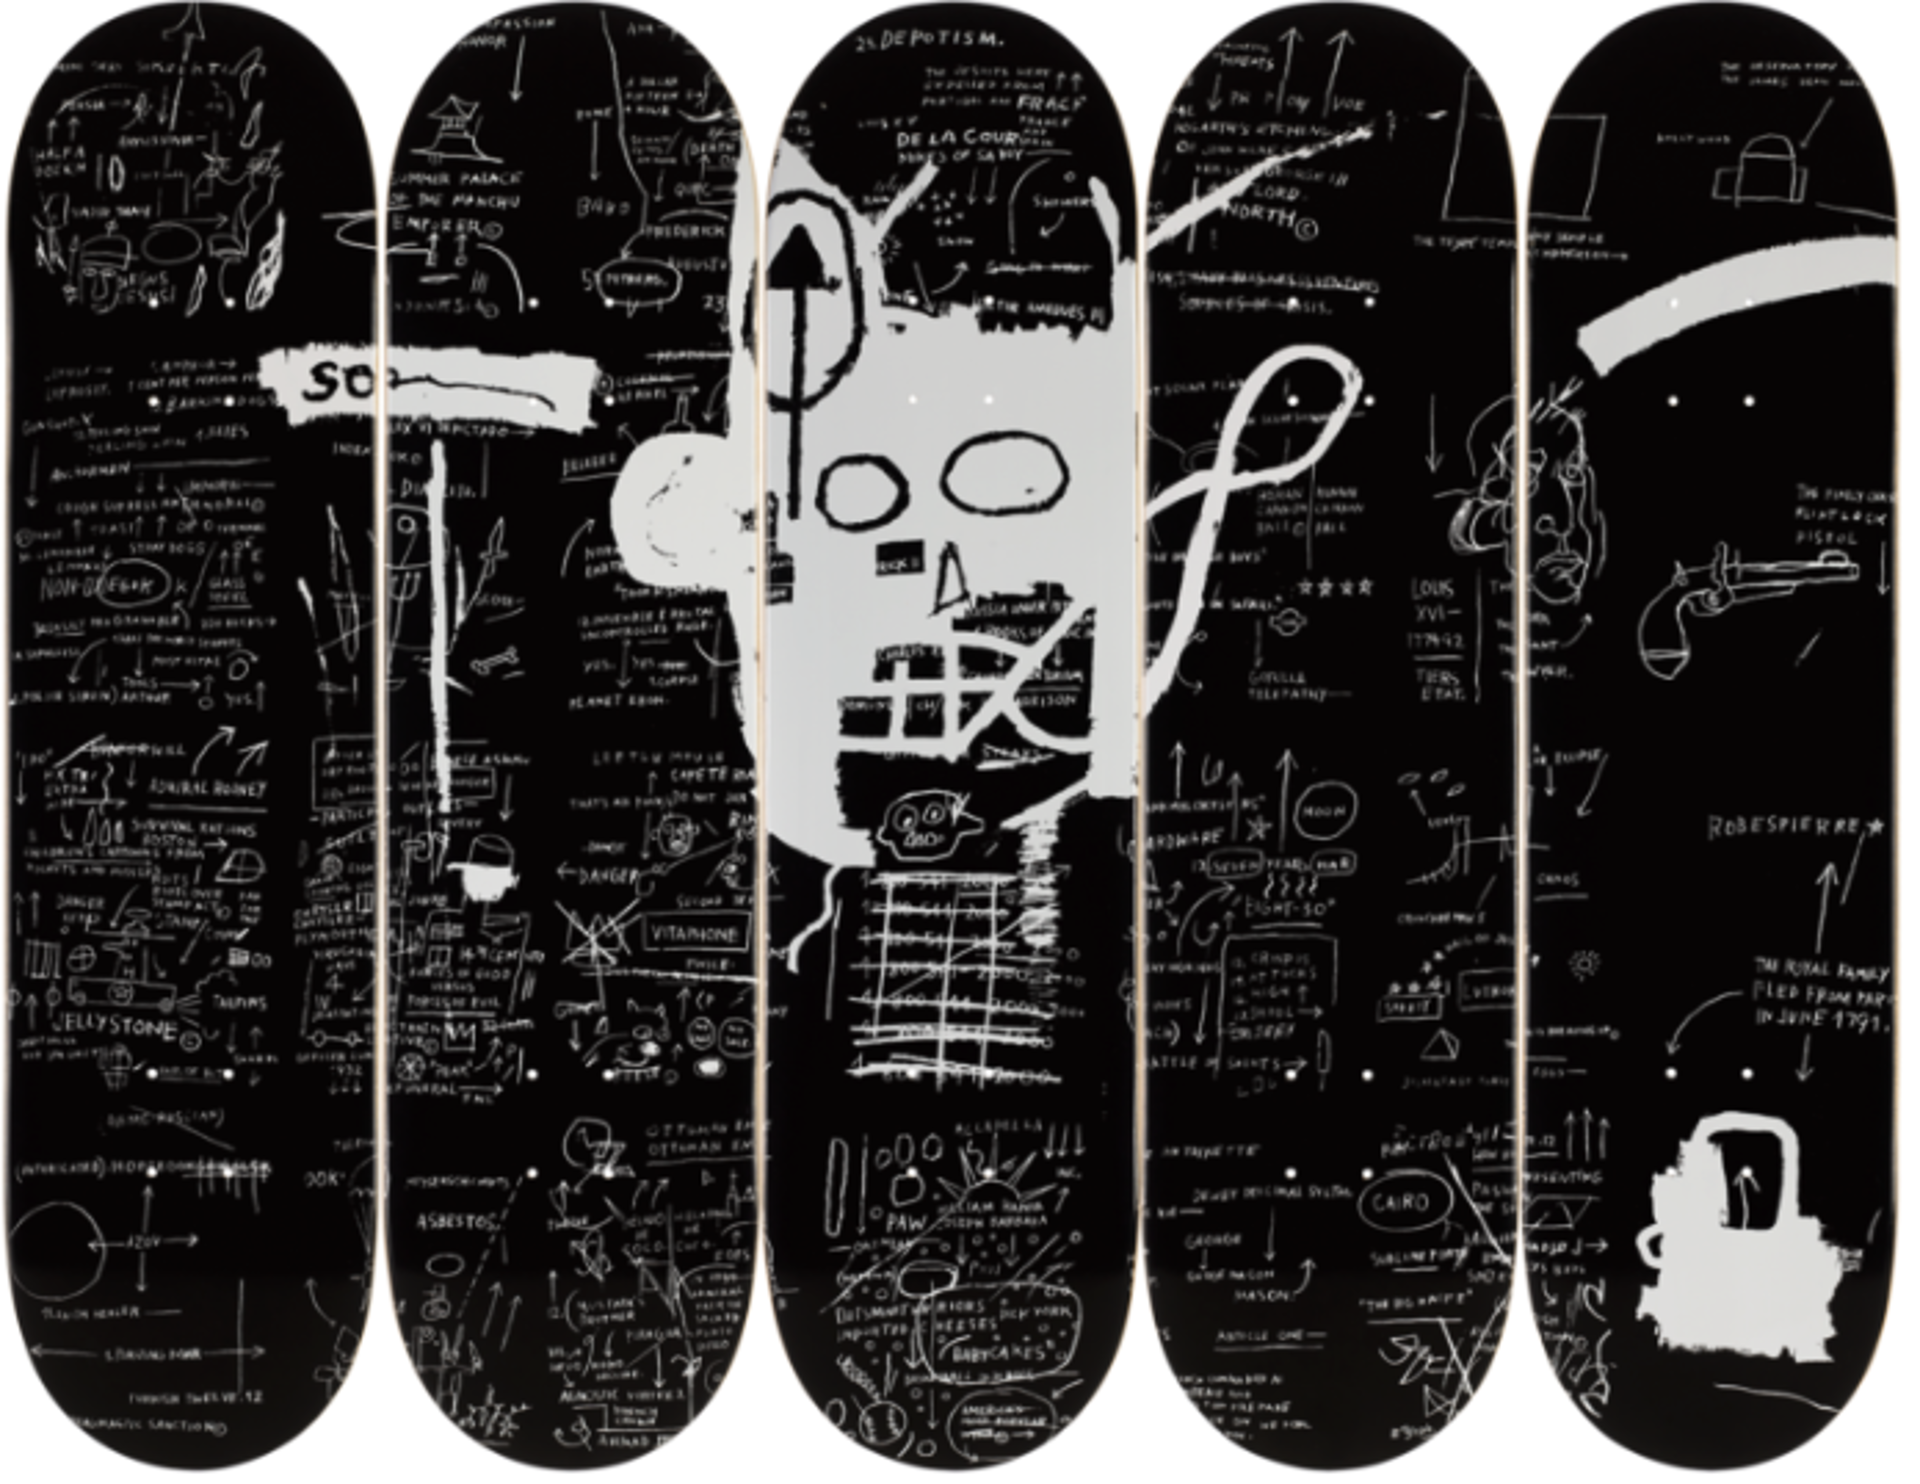 Demon-Set of 5 Skateboards by Jean-Michel Basquiat